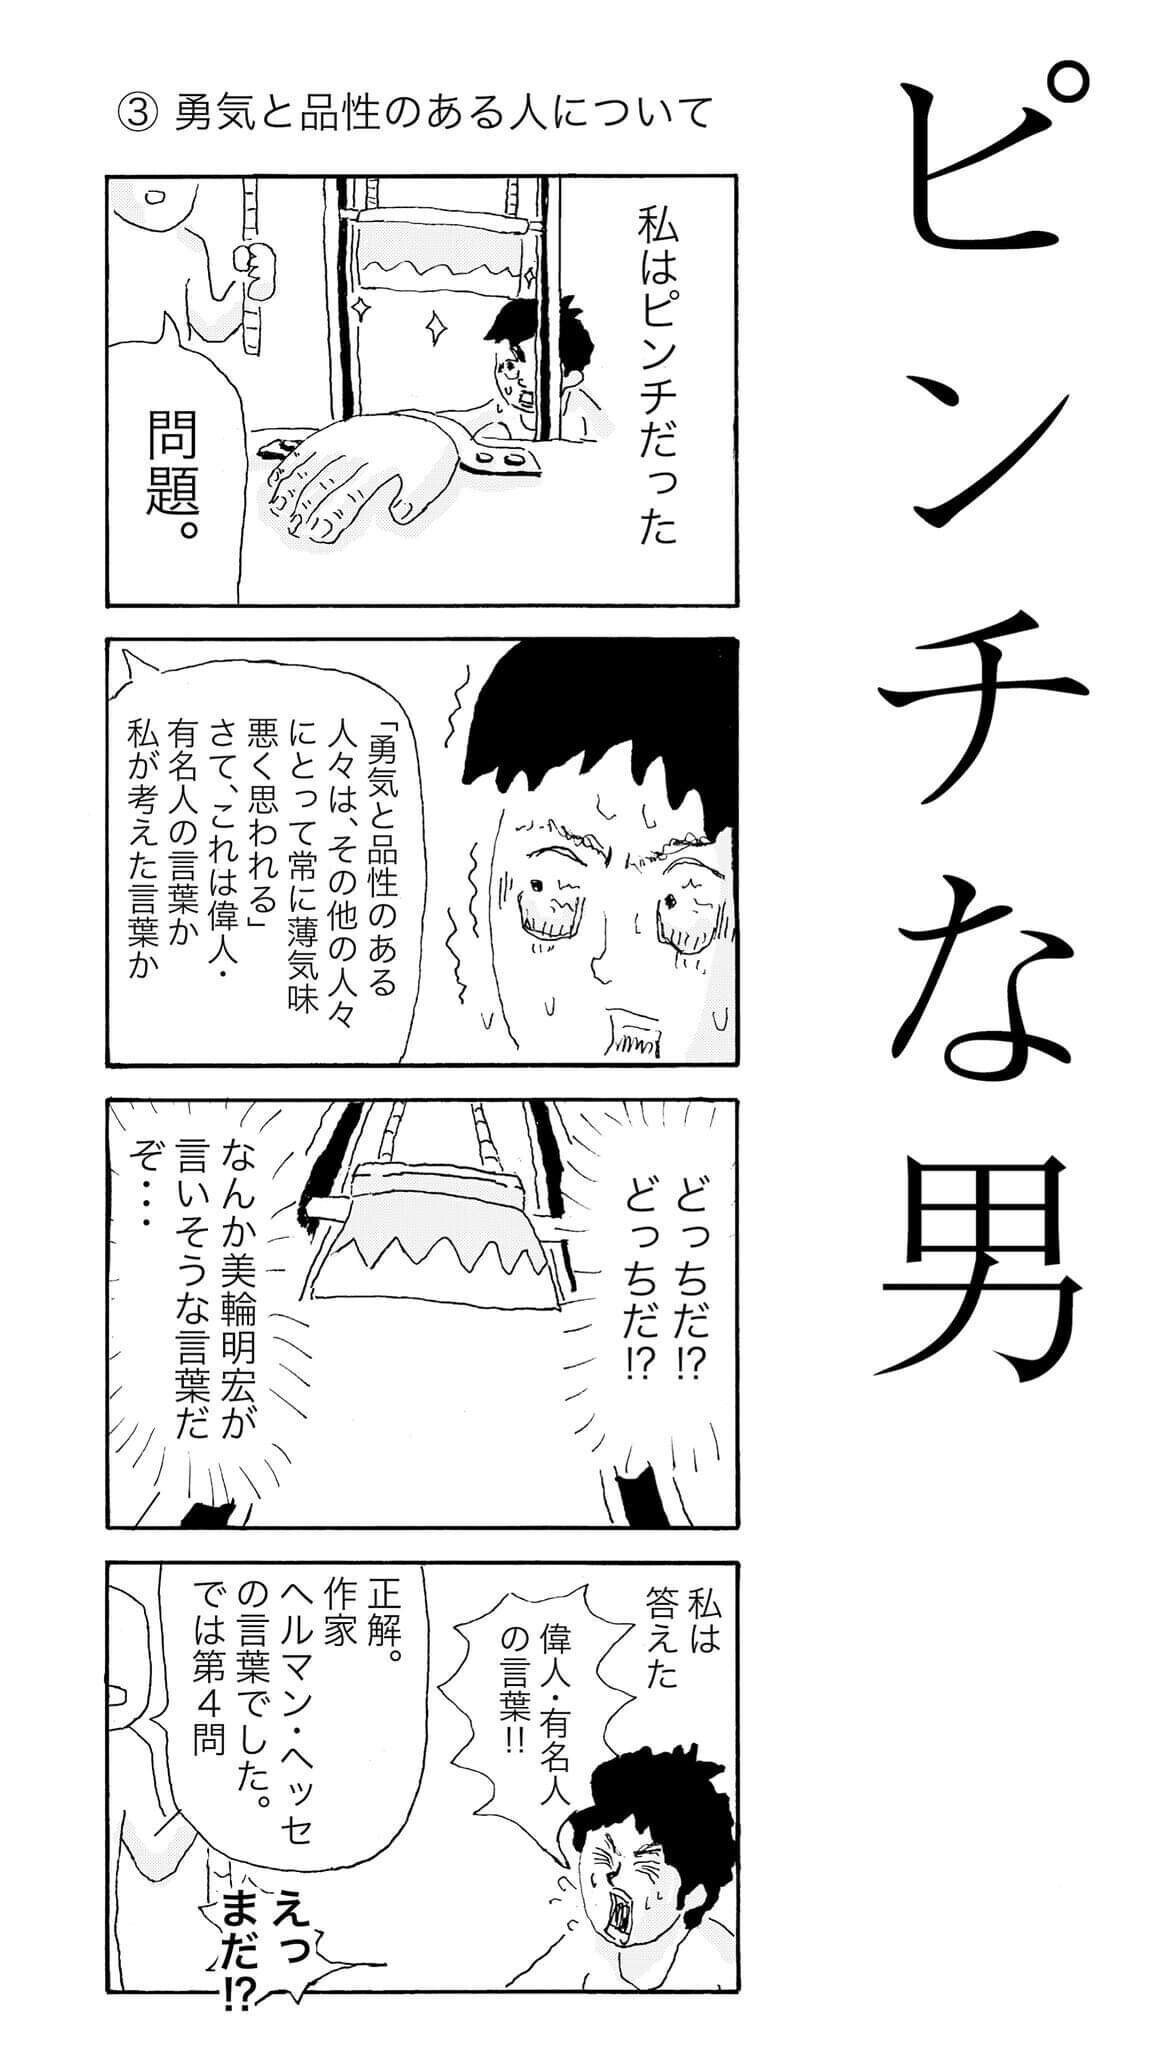 名言クイズ ピンチな男 勇気と品性のある人について 中川学 漫画家 Note